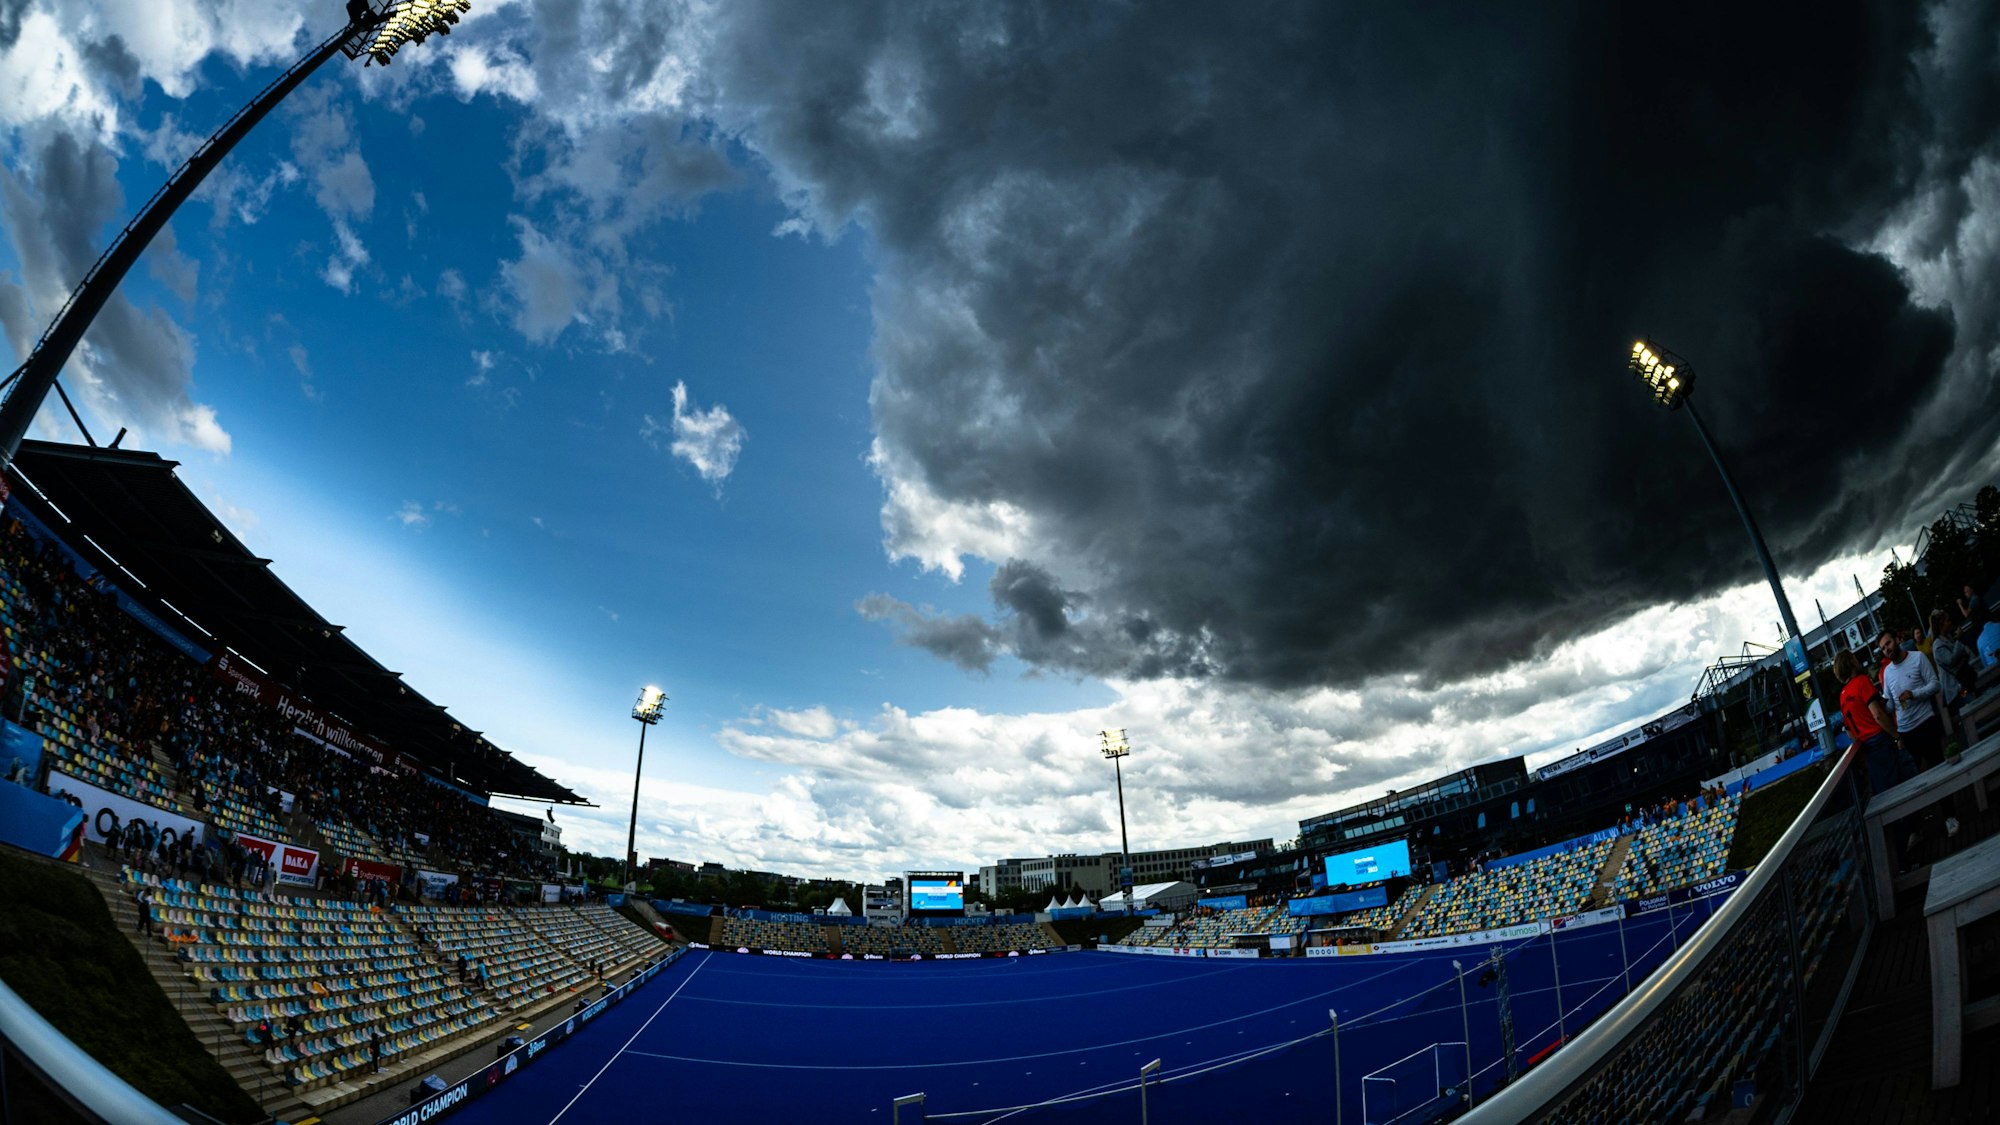 Der Hockey Park Deutschland in Mönchengladbach ist aus einer Ecke heraus zu sehen. Am Himmel ziehen graue Unwetterwolken auf.